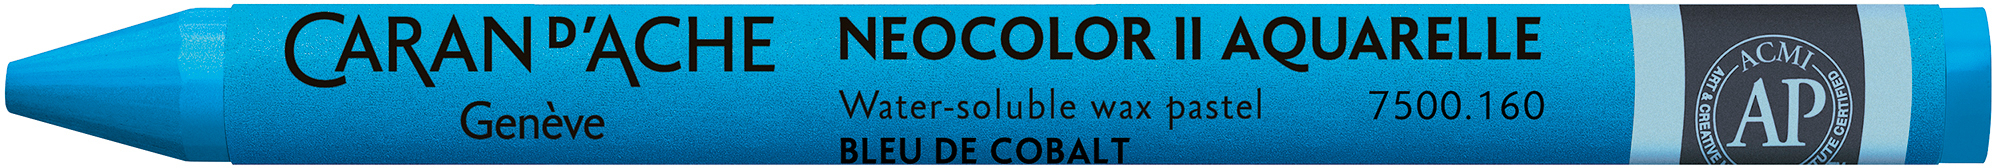 CARAN D'ACHE Crayons de cire Neocolor II 7500.160 bleu cobalt